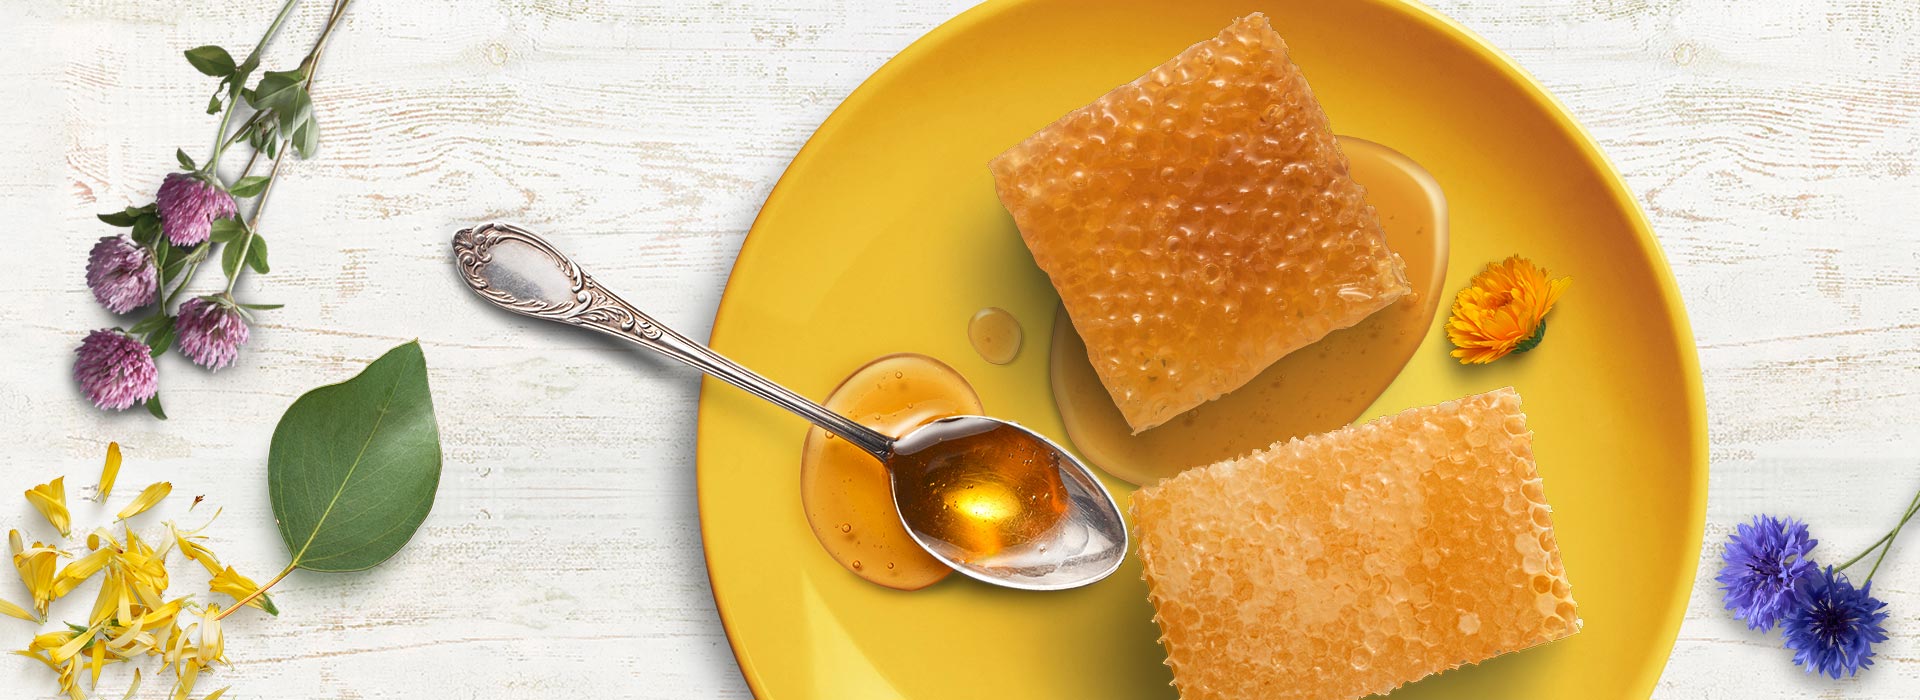 Rayons de miel - Merveilles d'abeilles